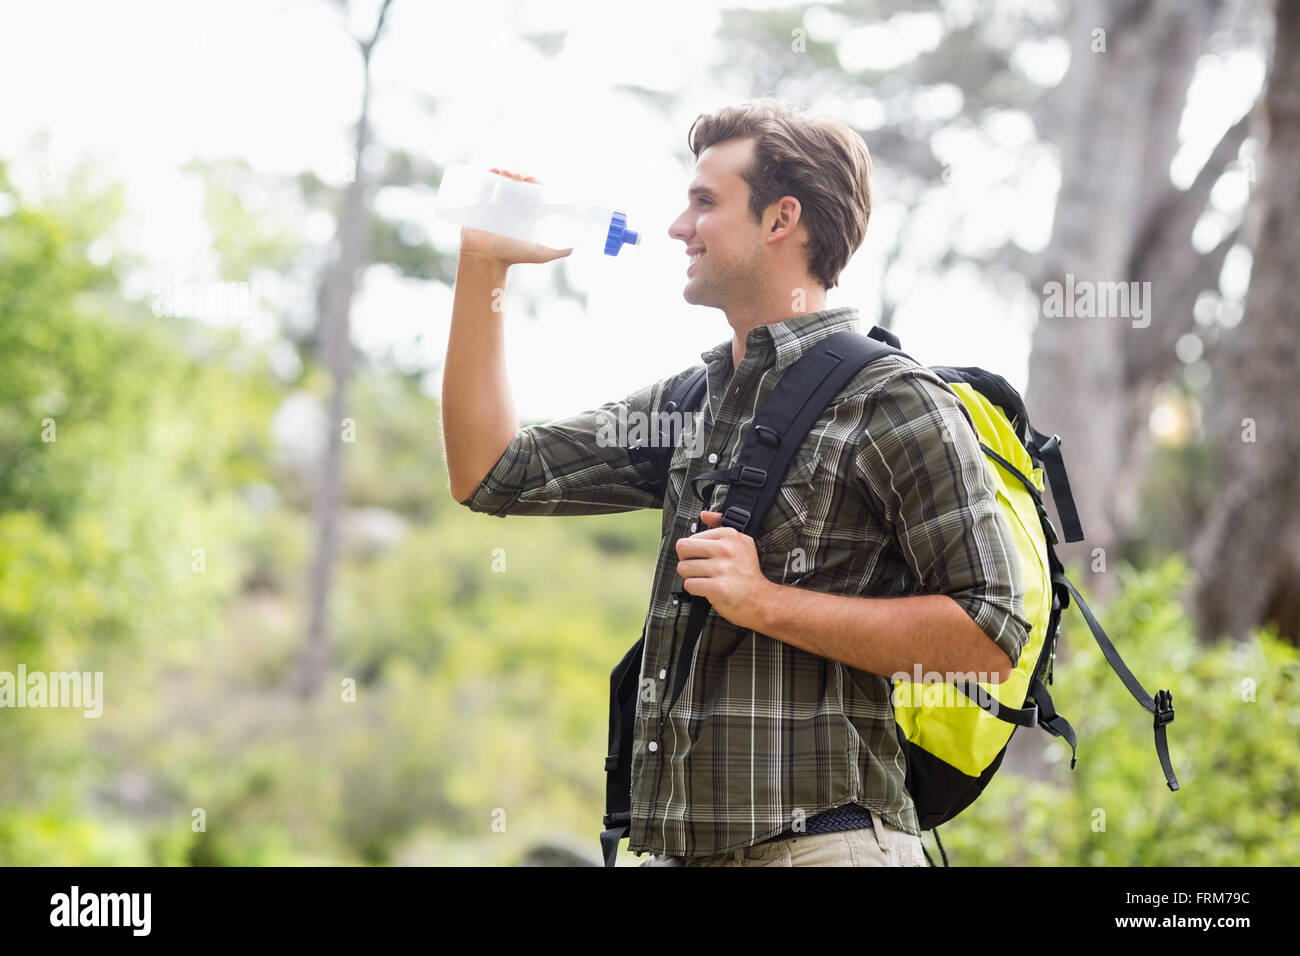 Jeune randonneur de l'eau potable et de standing in forest Banque D'Images